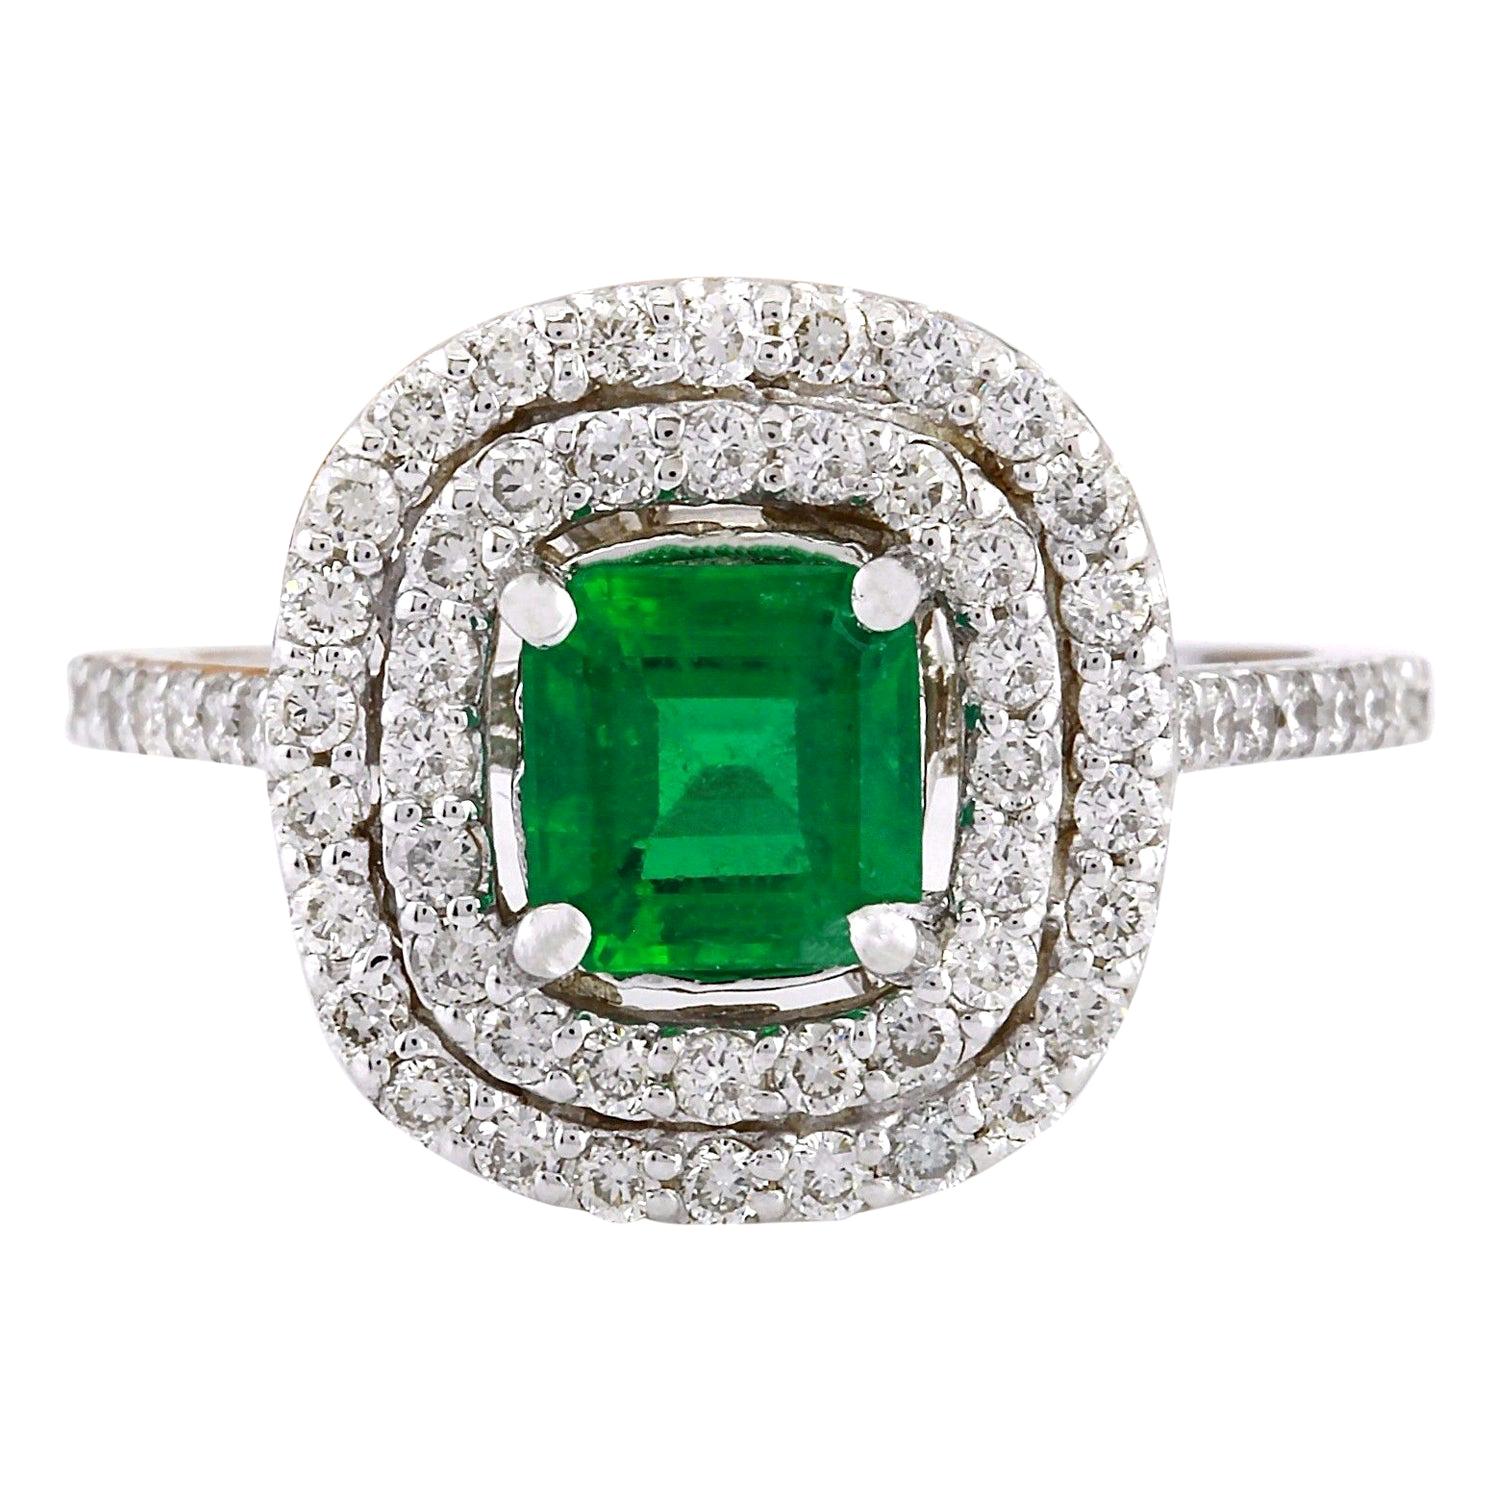 2.10 Carat Natural Emerald 14 Karat Solid White Gold Diamond Ring